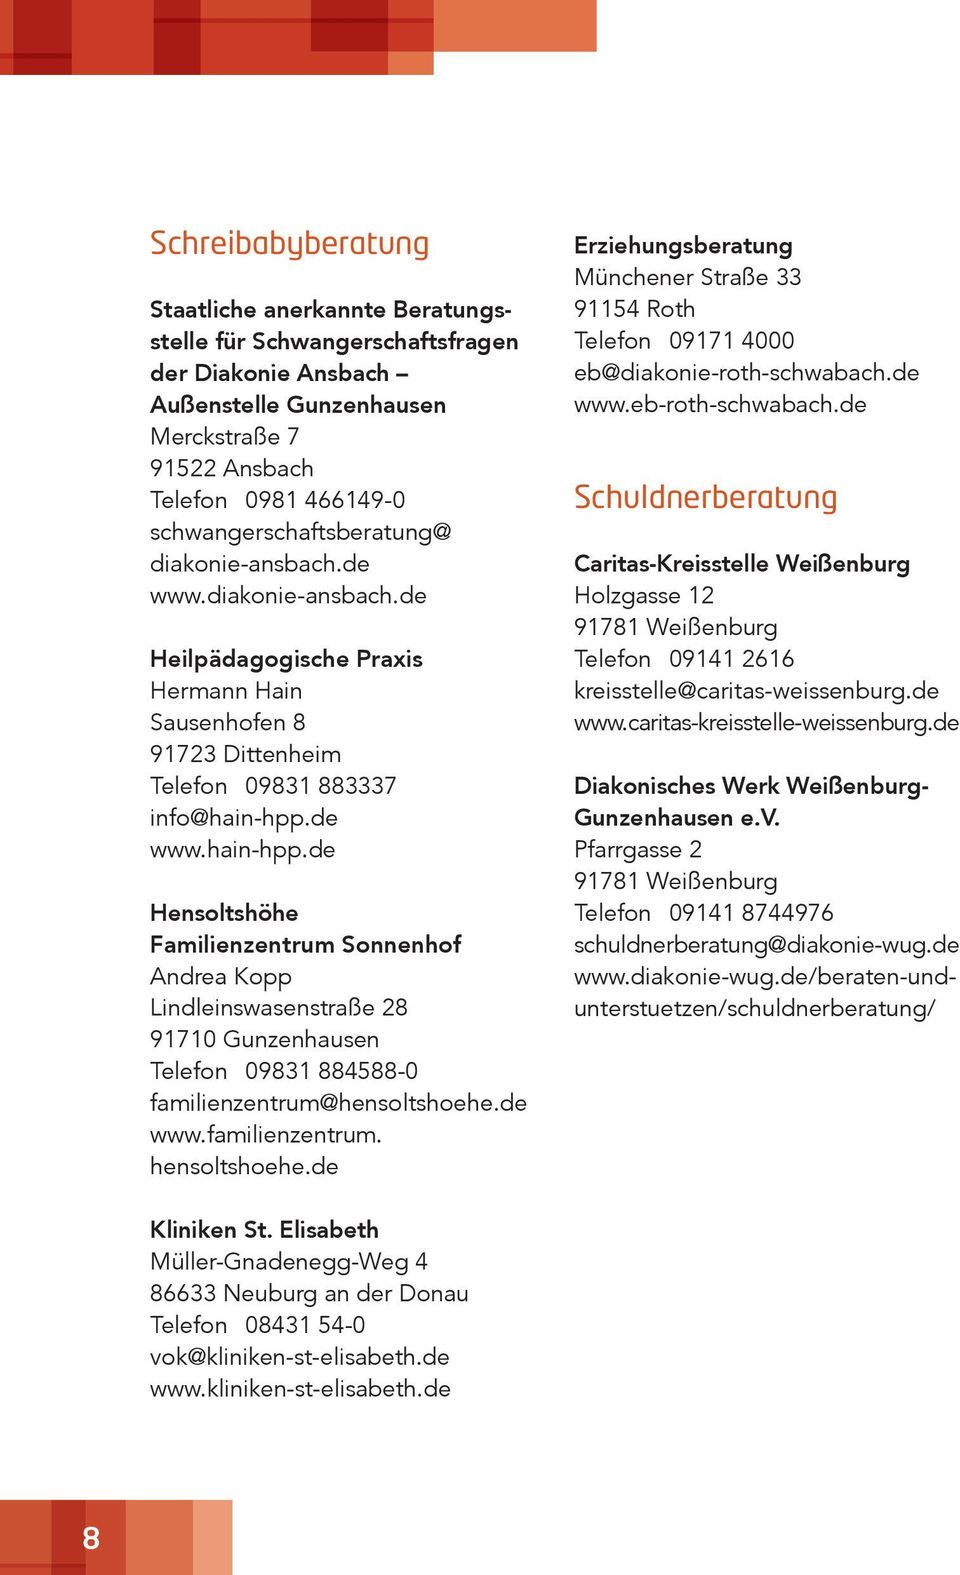 de www.hain-hpp.de Hensoltshöhe Familienzentrum Sonnenhof Andrea Kopp Lindleinswasenstraße 28 Telefon 09831 884588-0 familienzentrum@hensoltshoehe.de www.familienzentrum. hensoltshoehe.